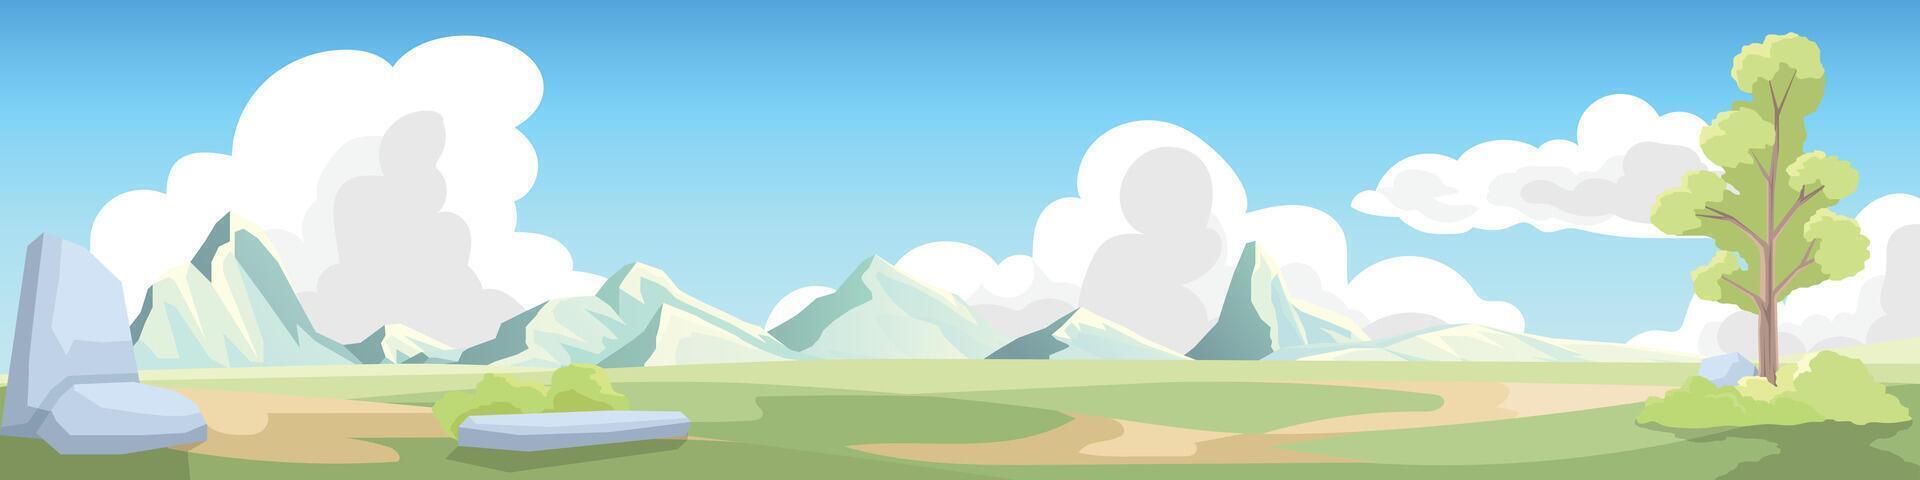 paesaggio Visualizza di primavera sfondo con montagne e nuvole sotto chiaro cielo. la zona è coperto nel verde i campi e ha alberi e rocce. vettore illustrazione nel cartone animato stile.